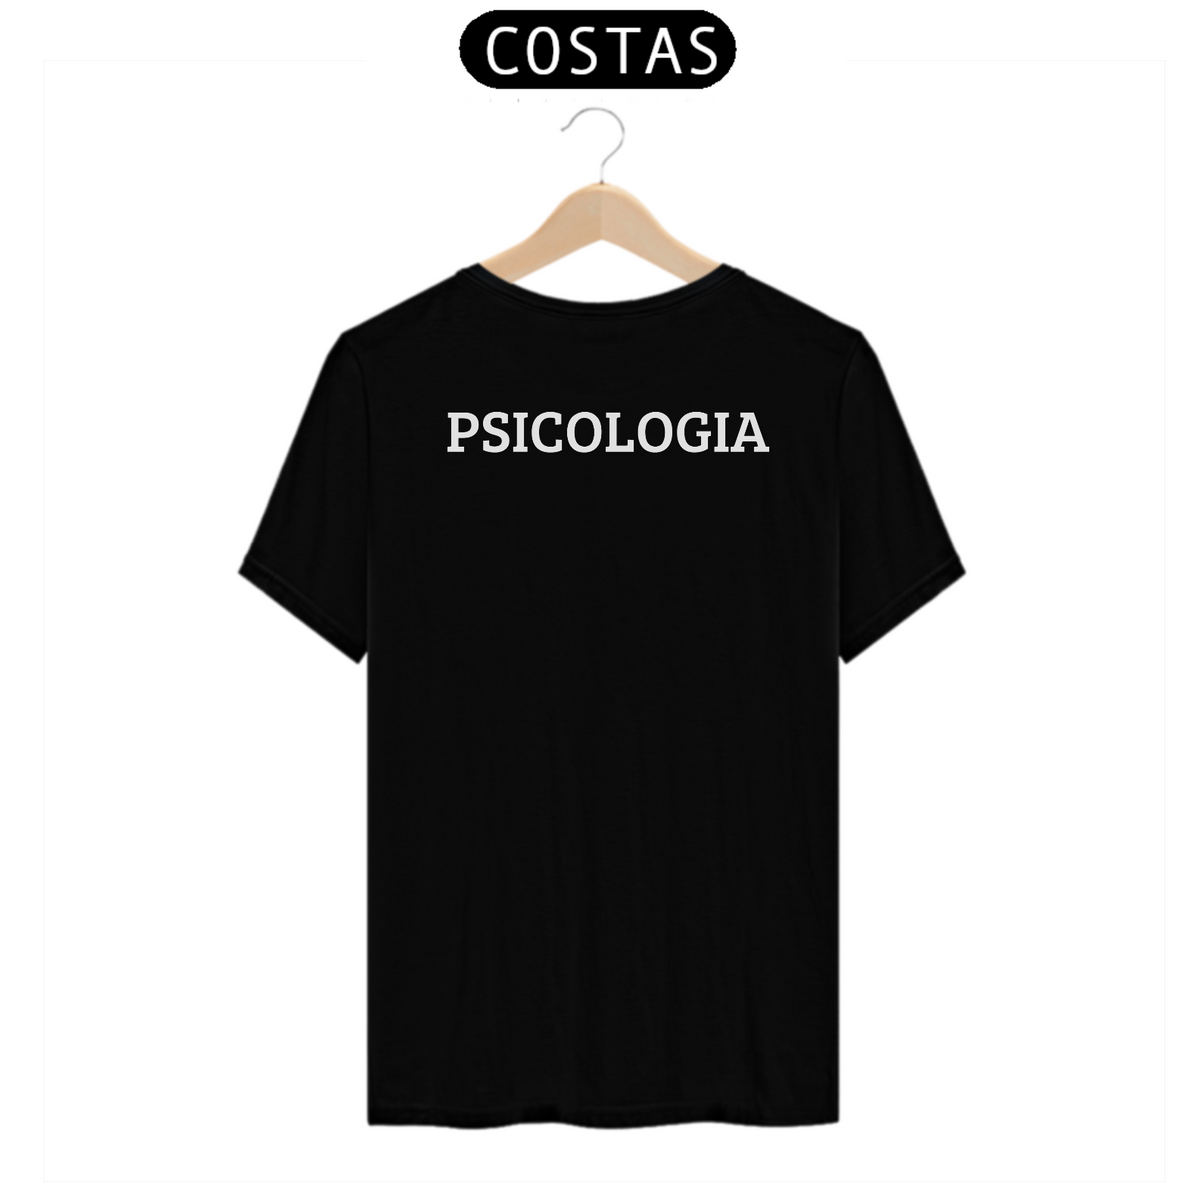 Nome do produto: PSICOLOGIA (COSTAS)